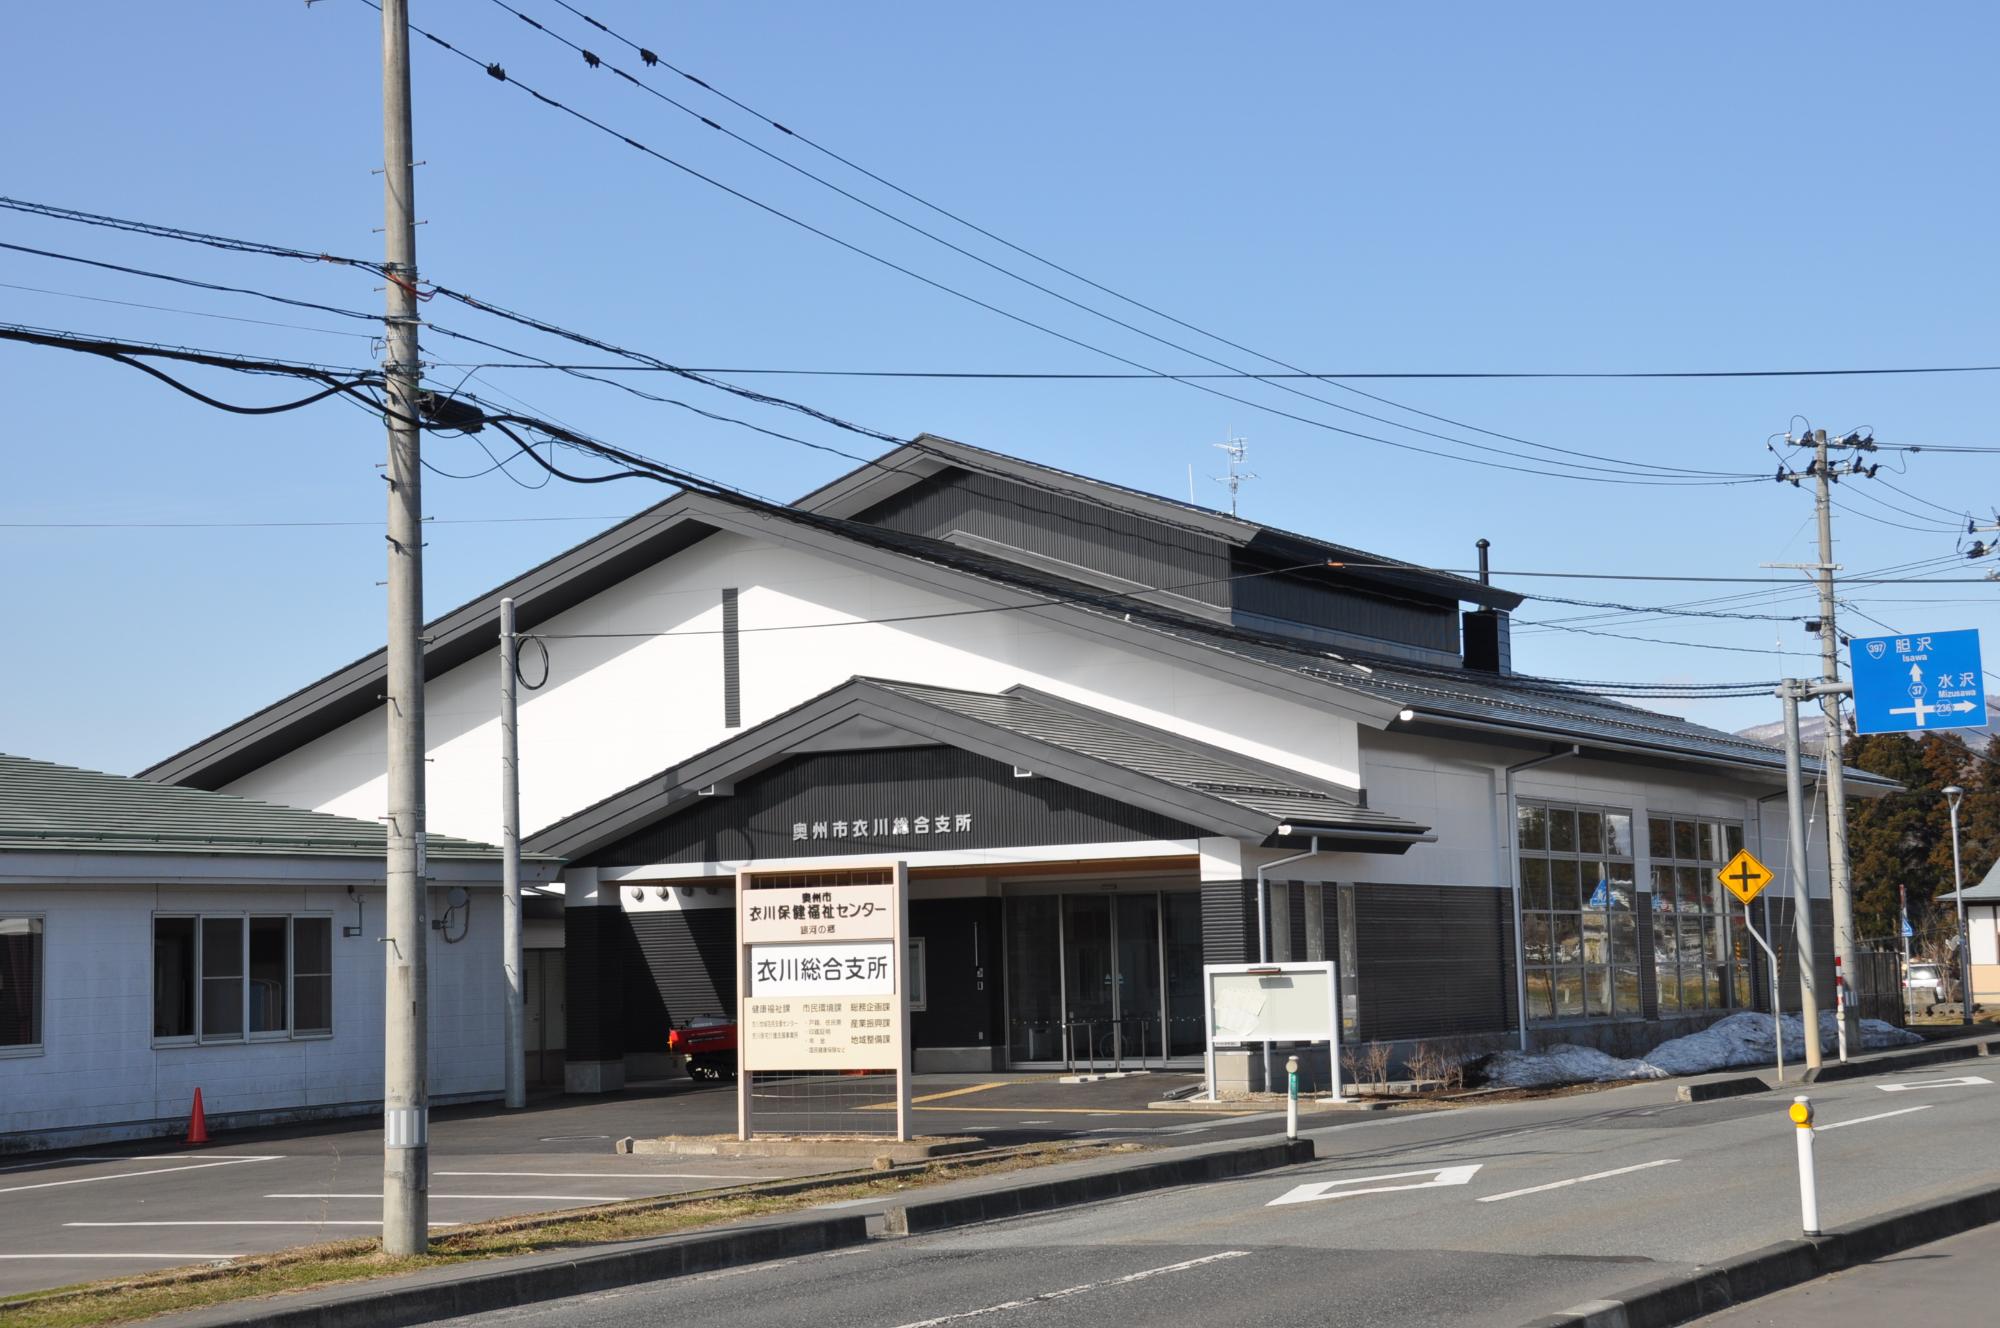 建物前の道路側に「衣川総合支所」と書かれた看板が立っており、黒い三角屋根、上部が白で下半分が黒色の外壁をした衣川総合支所の外観写真